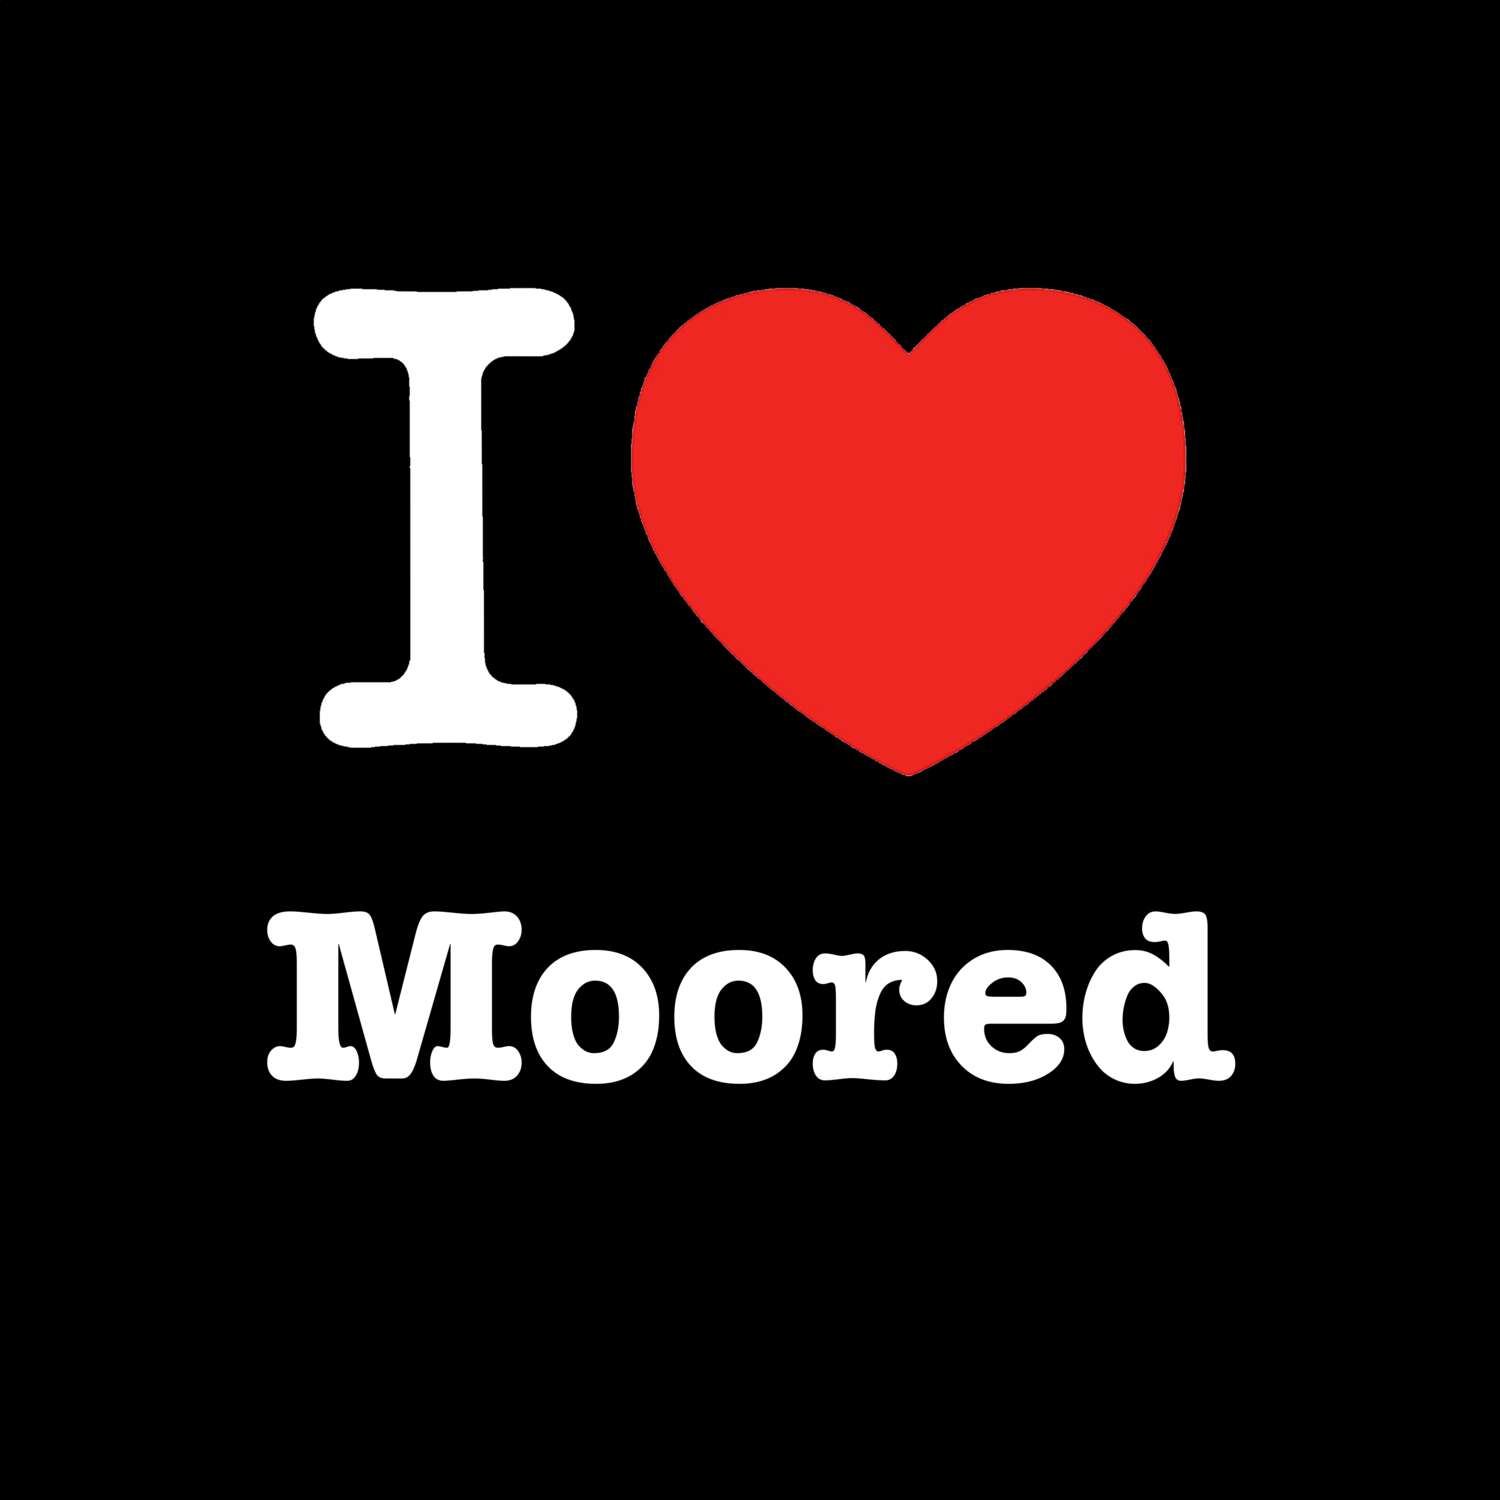 Moored T-Shirt »I love«